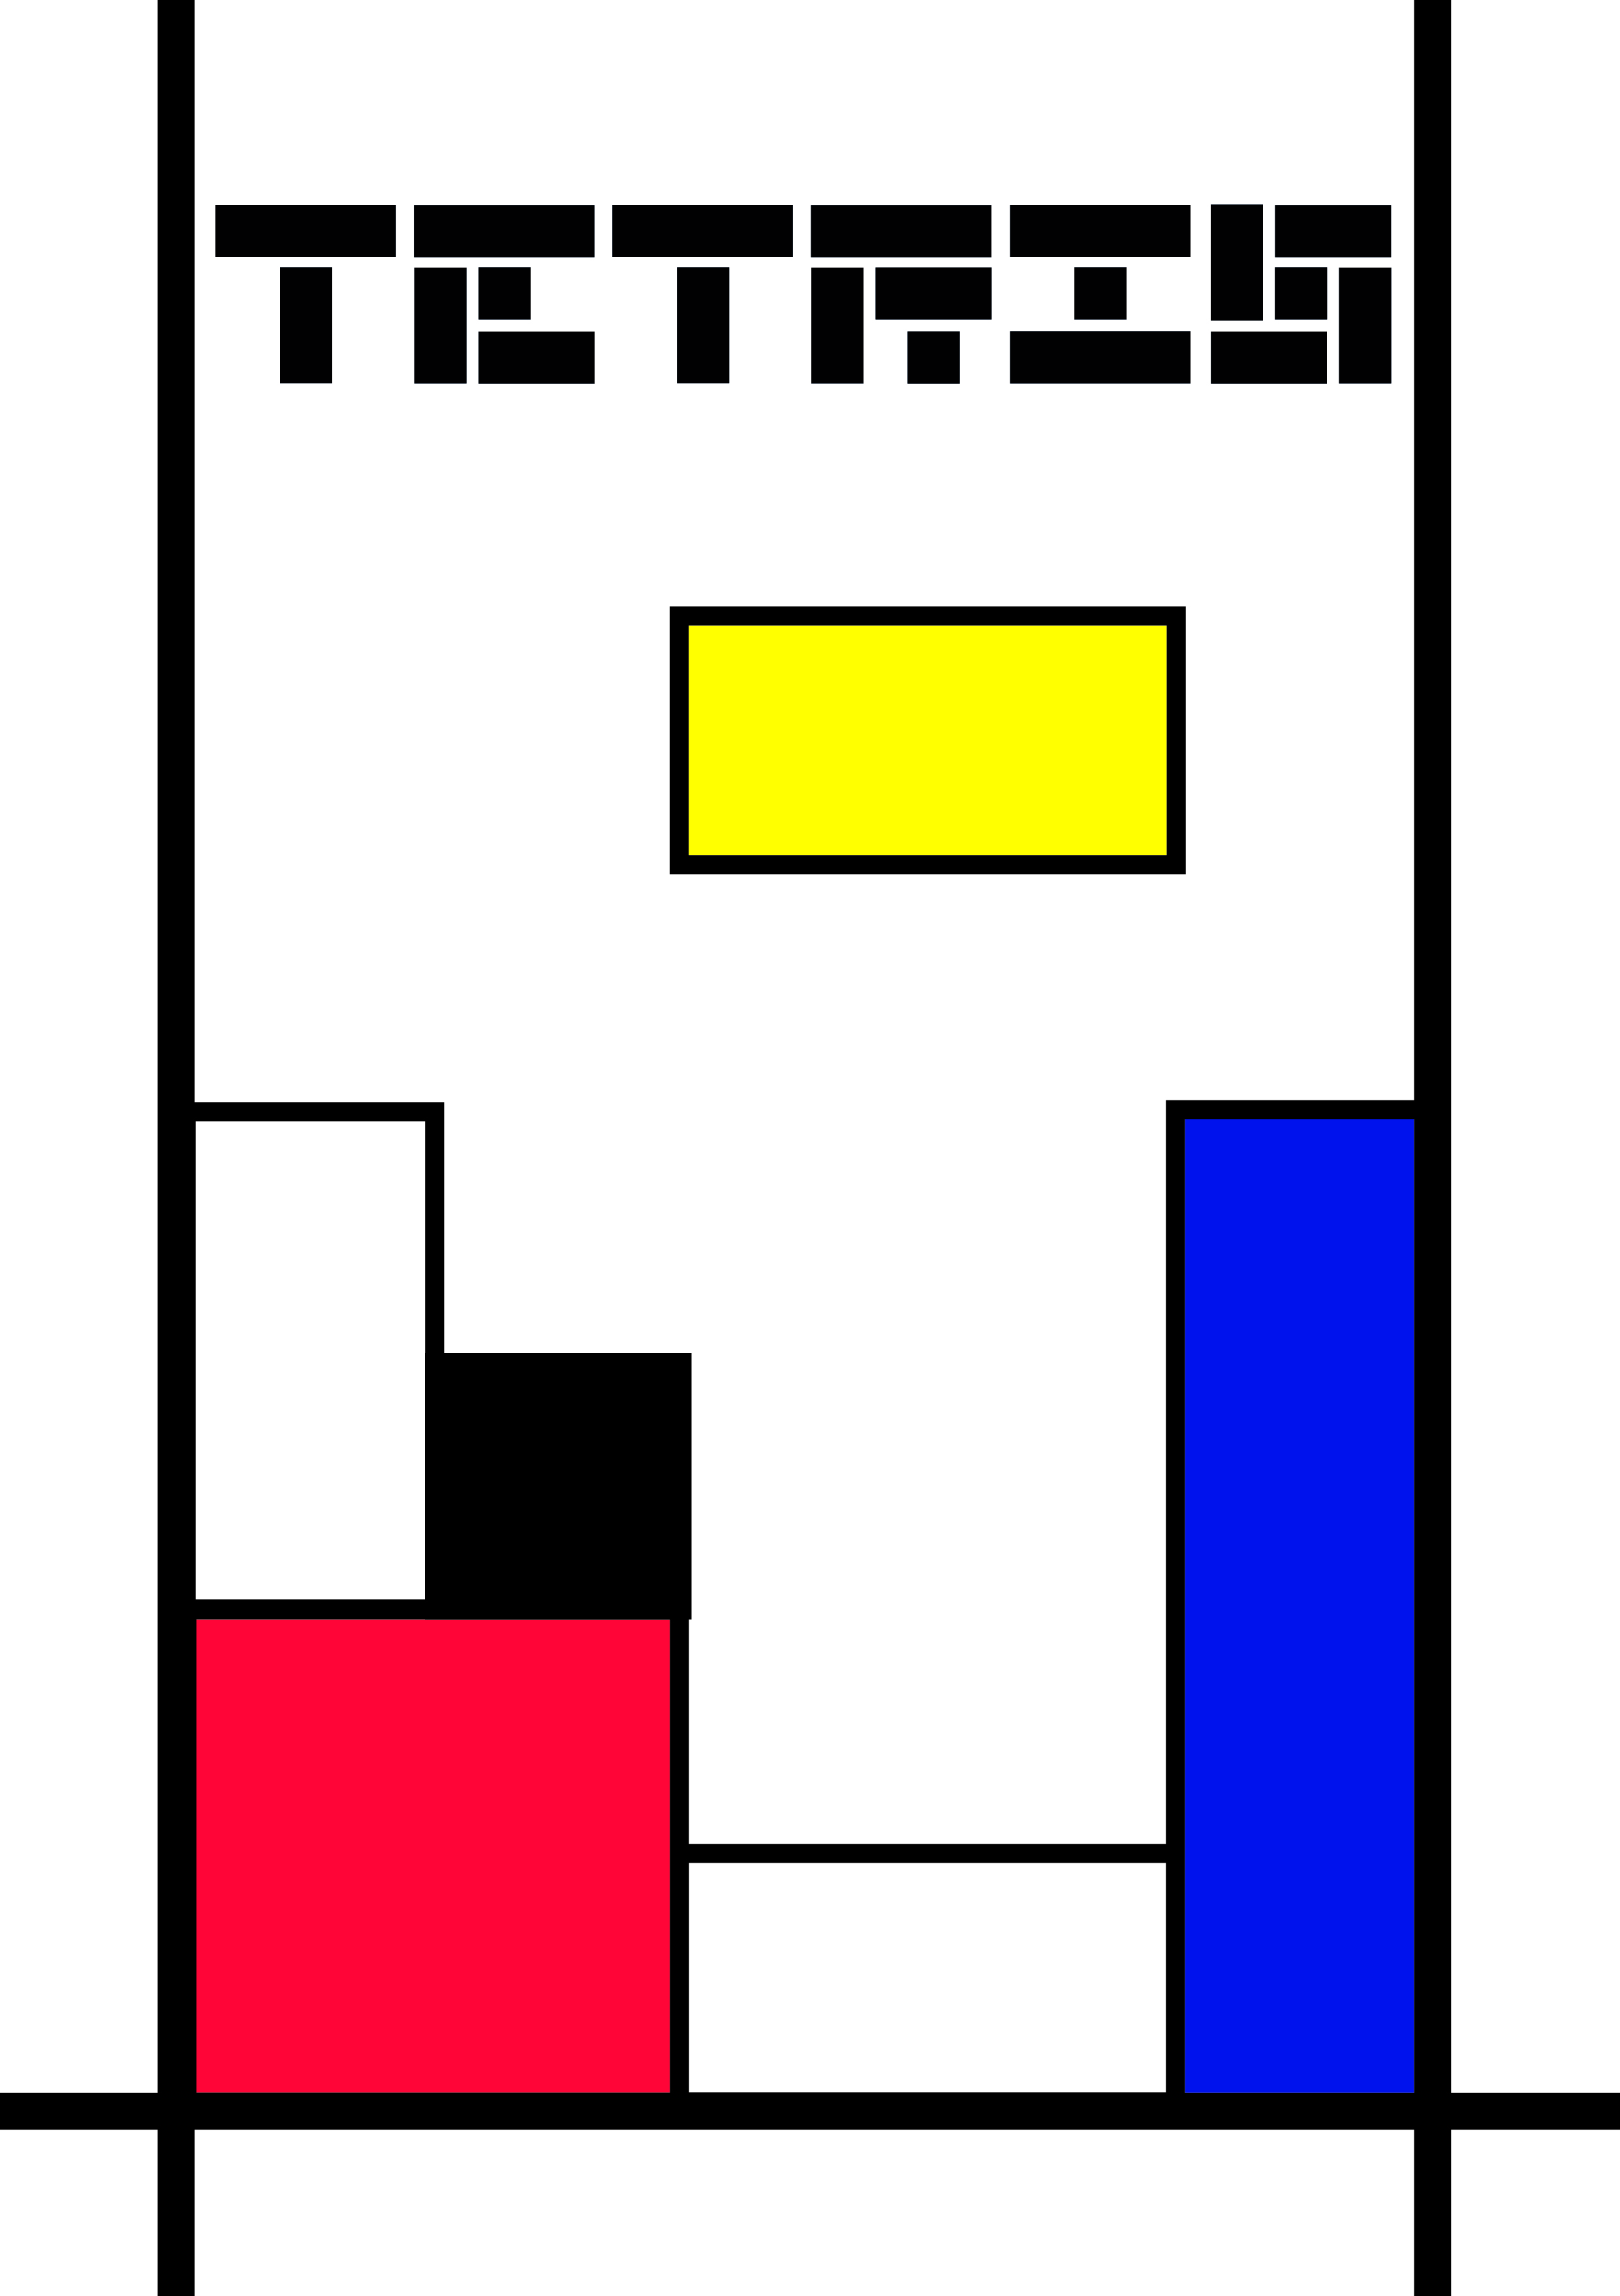 Tetris + Mondrian